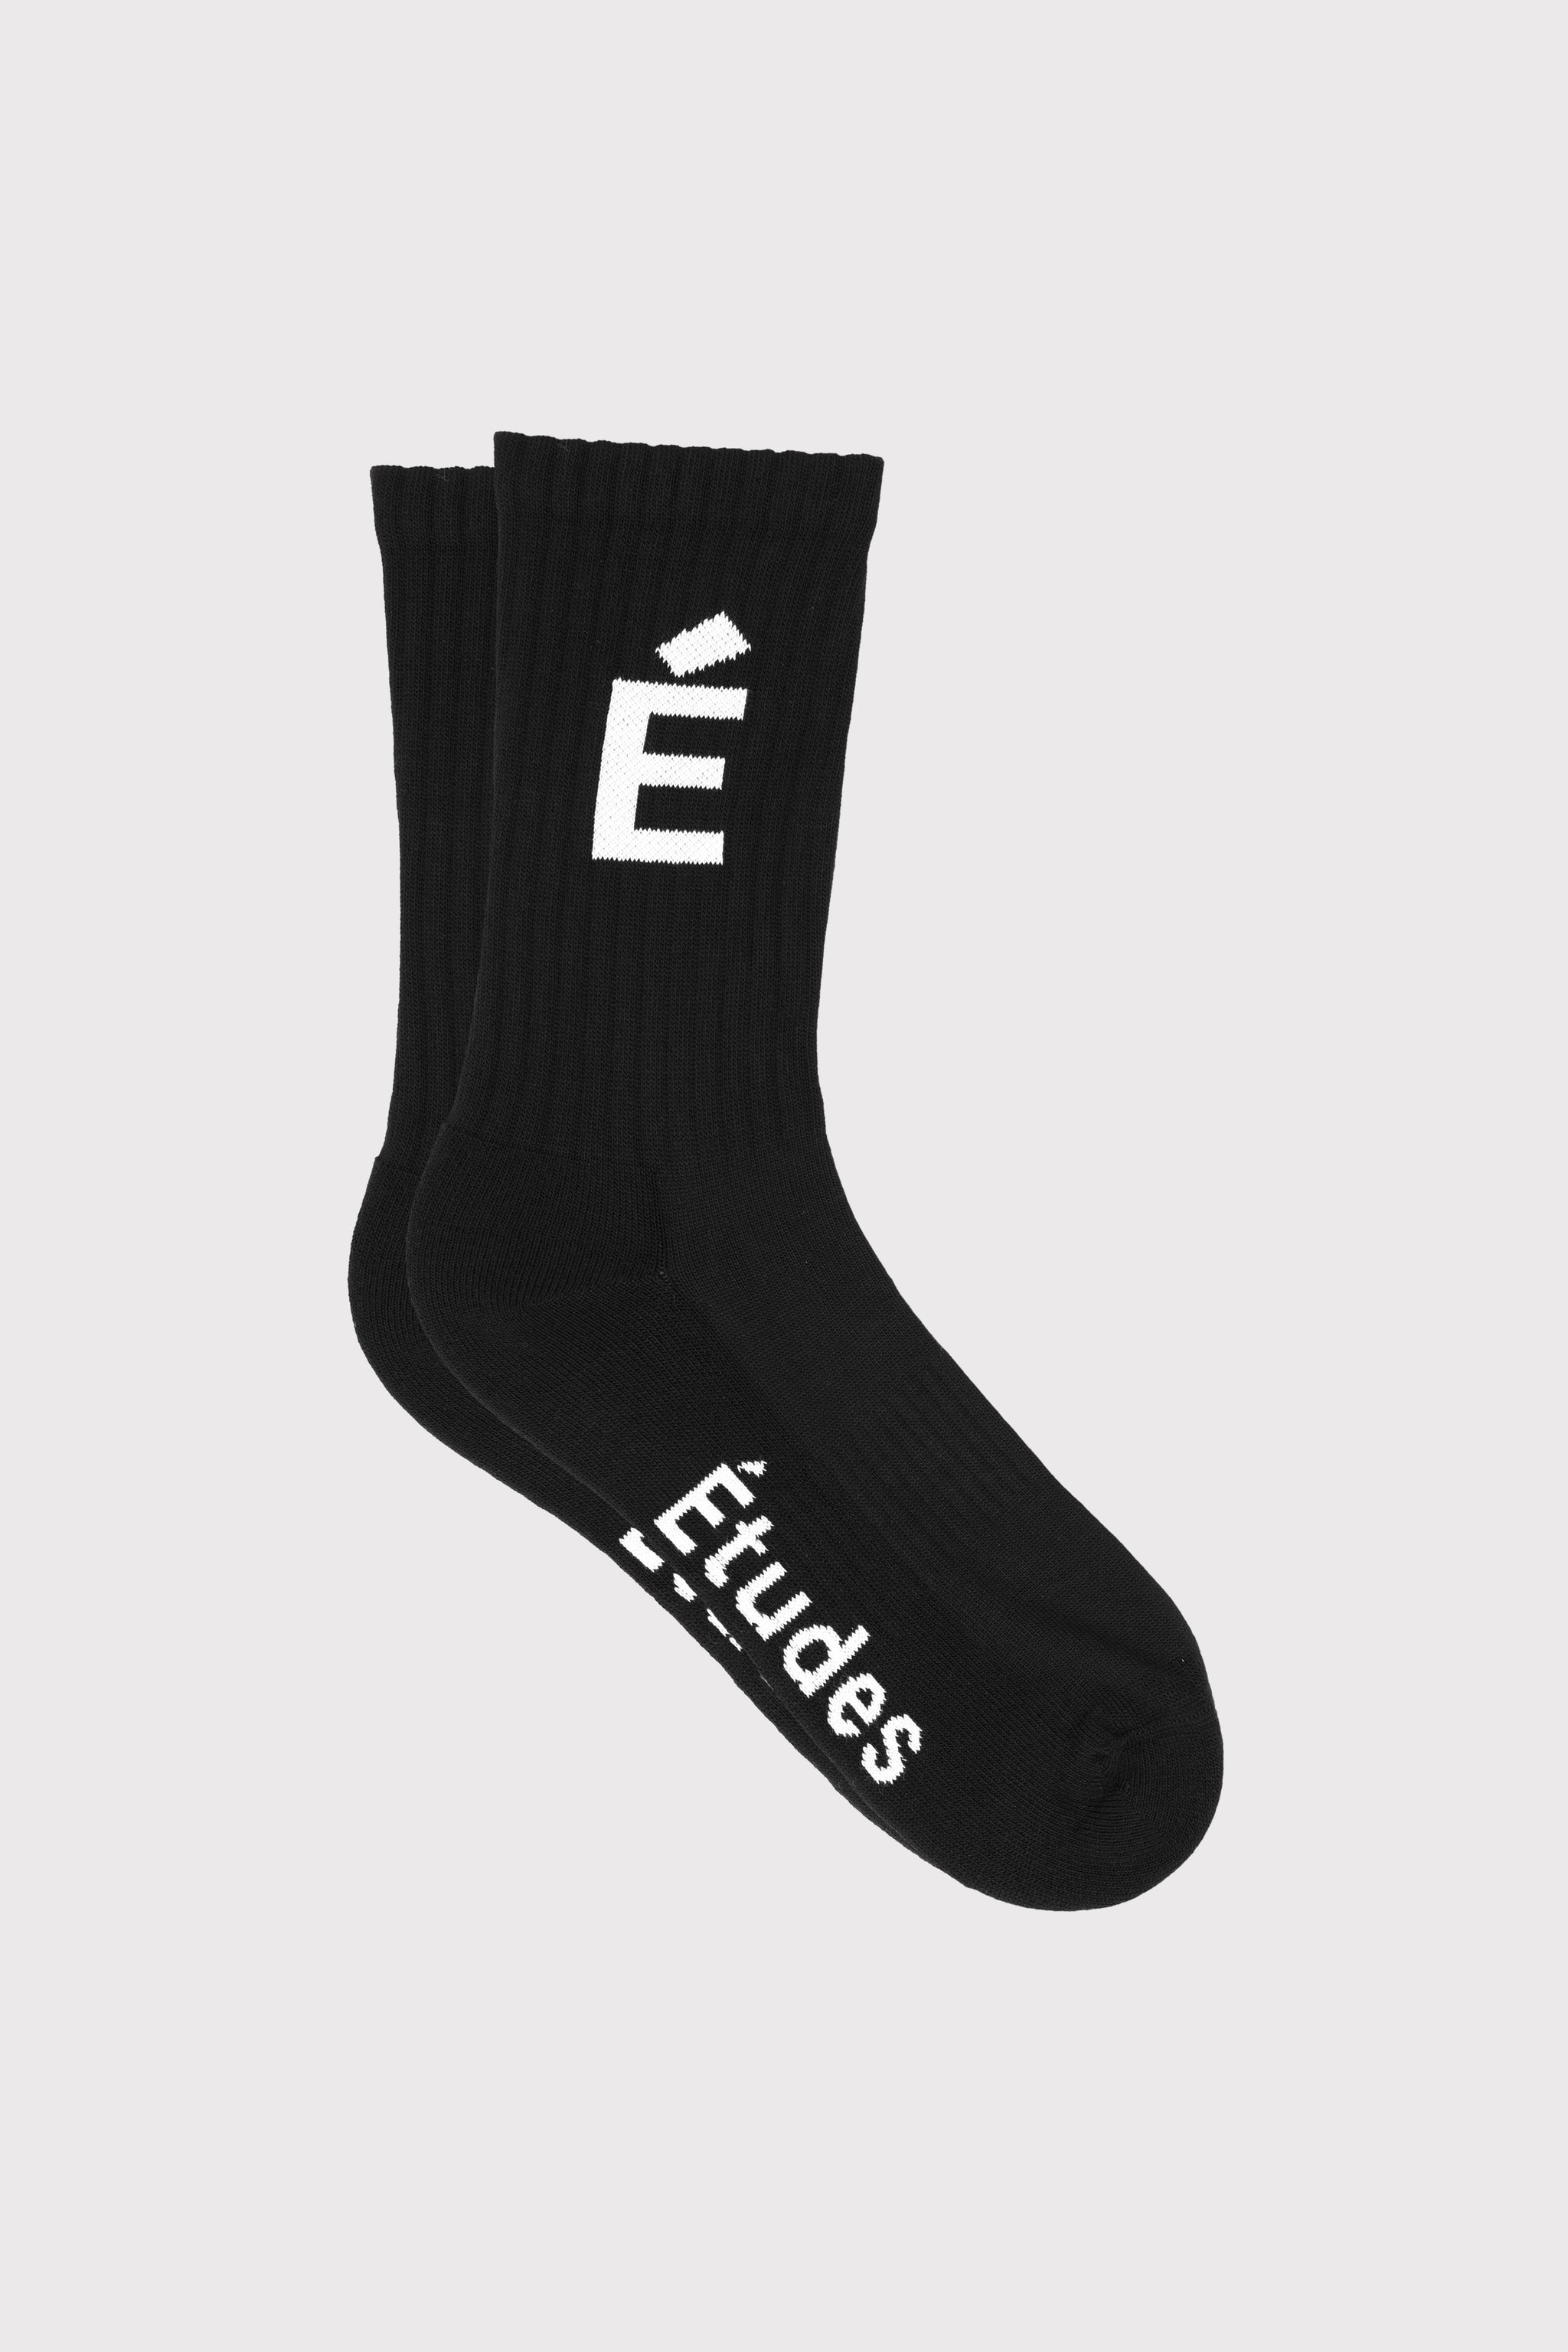 Etudes Studio Socks Black